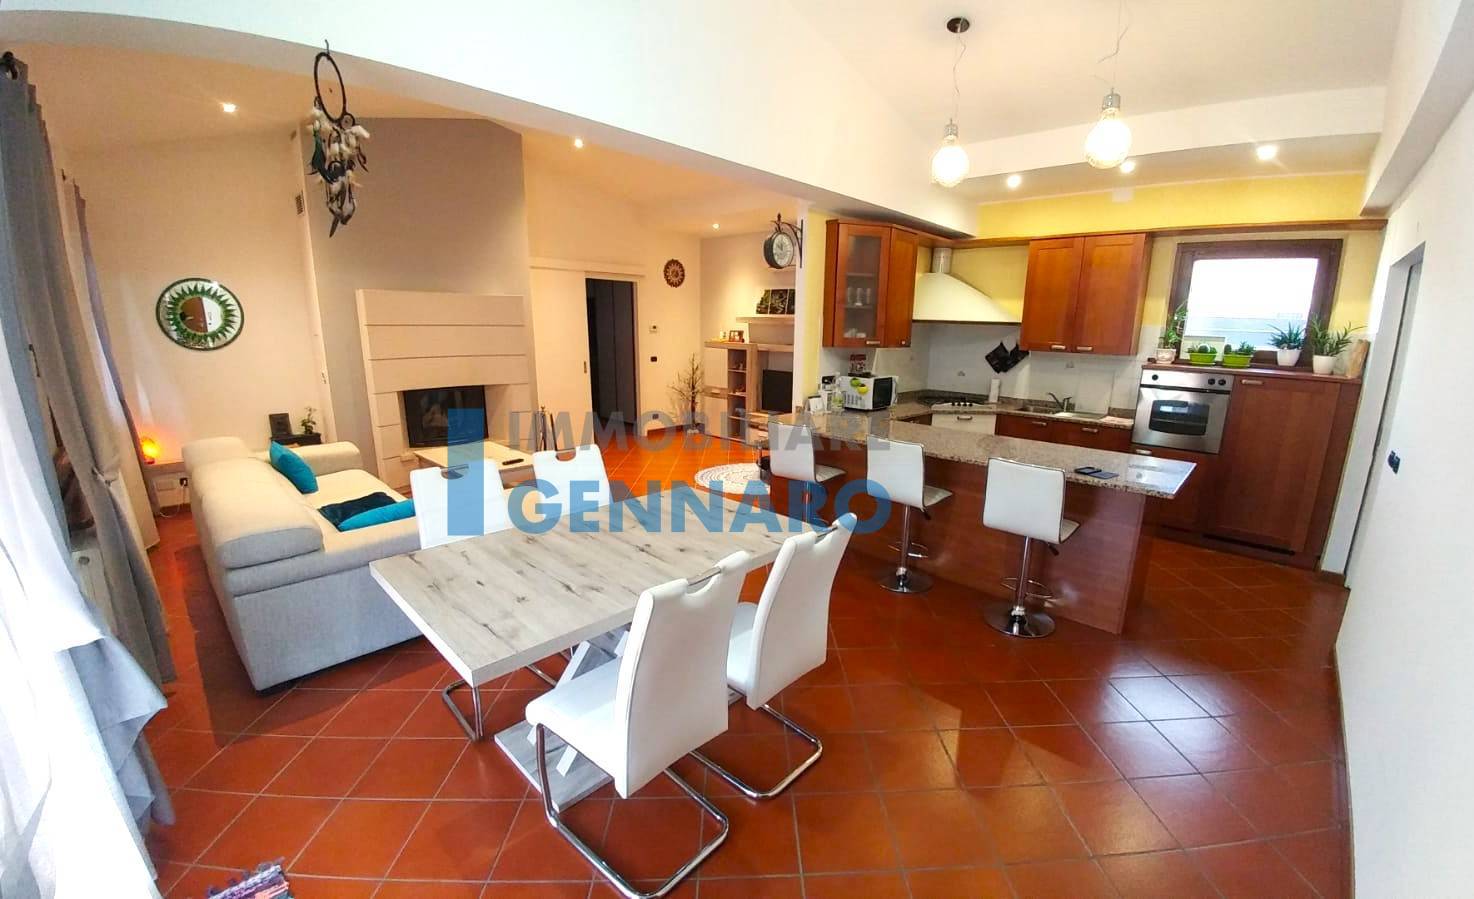 Appartamento in vendita a Lestizza, 4 locali, zona eriano, prezzo € 130.000 | PortaleAgenzieImmobiliari.it